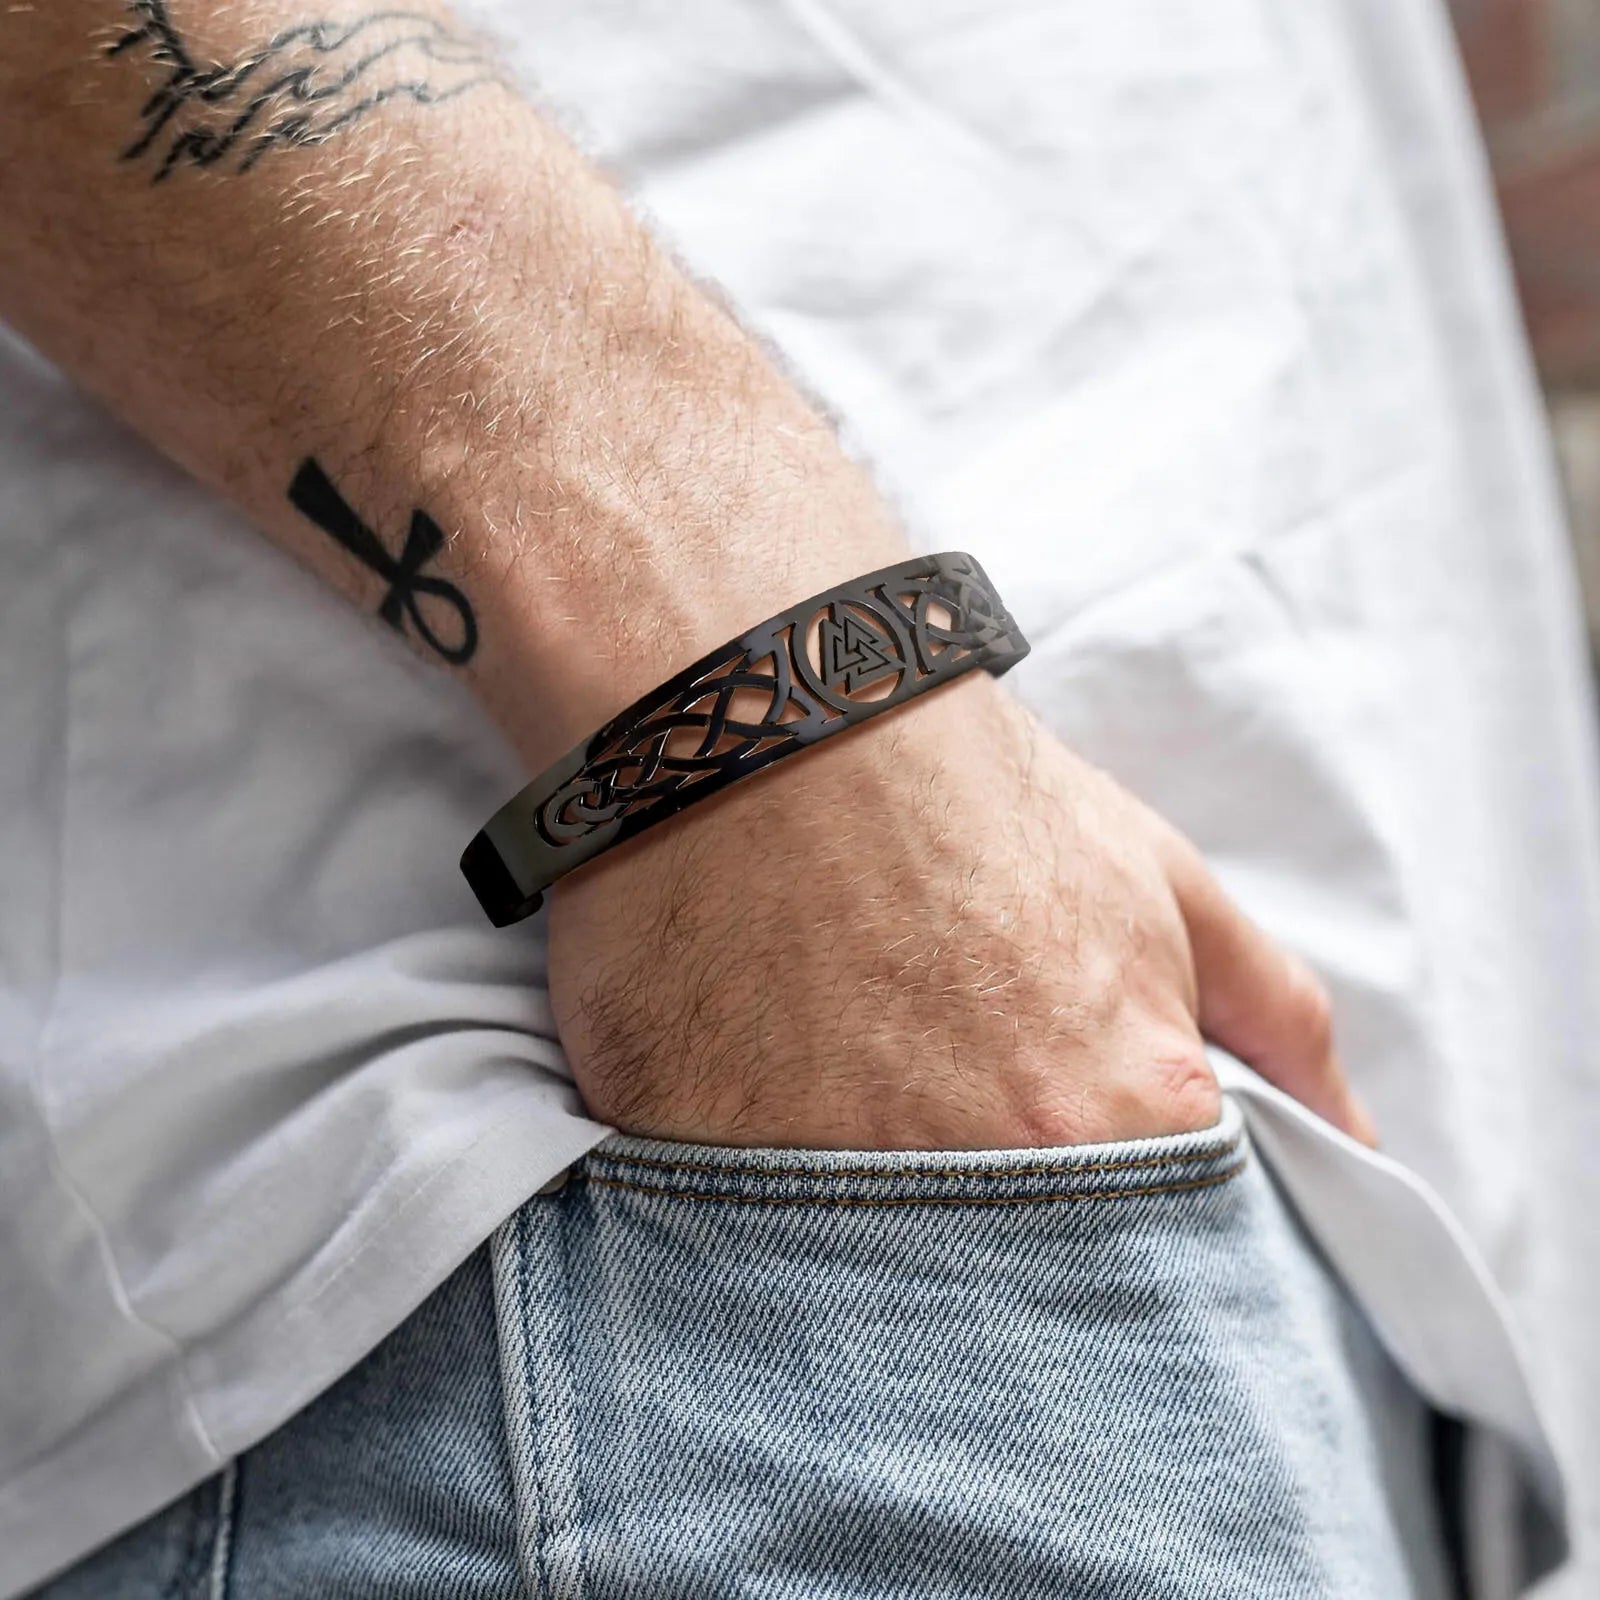 Men's Metal Stainless Steel Easy-Hook Clasp Trendy Round Bracelet